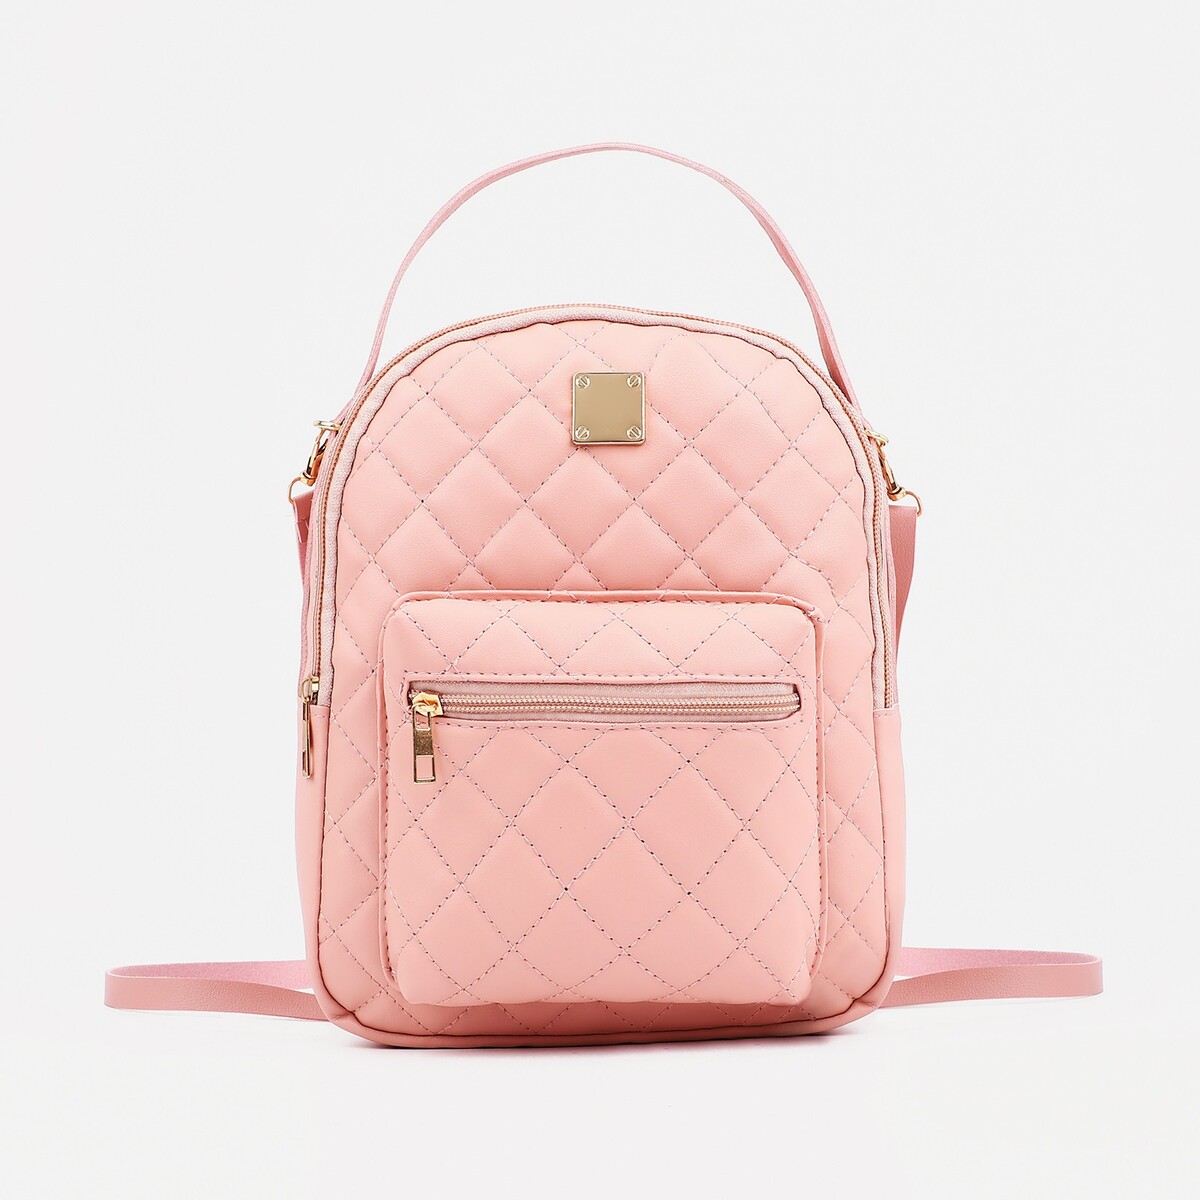 Мини-рюкзак из искусственной кожи на молнии, 1 карман, цвет розовый рюкзак школьный из текстиля на молнии наружный карман сиреневый розовый